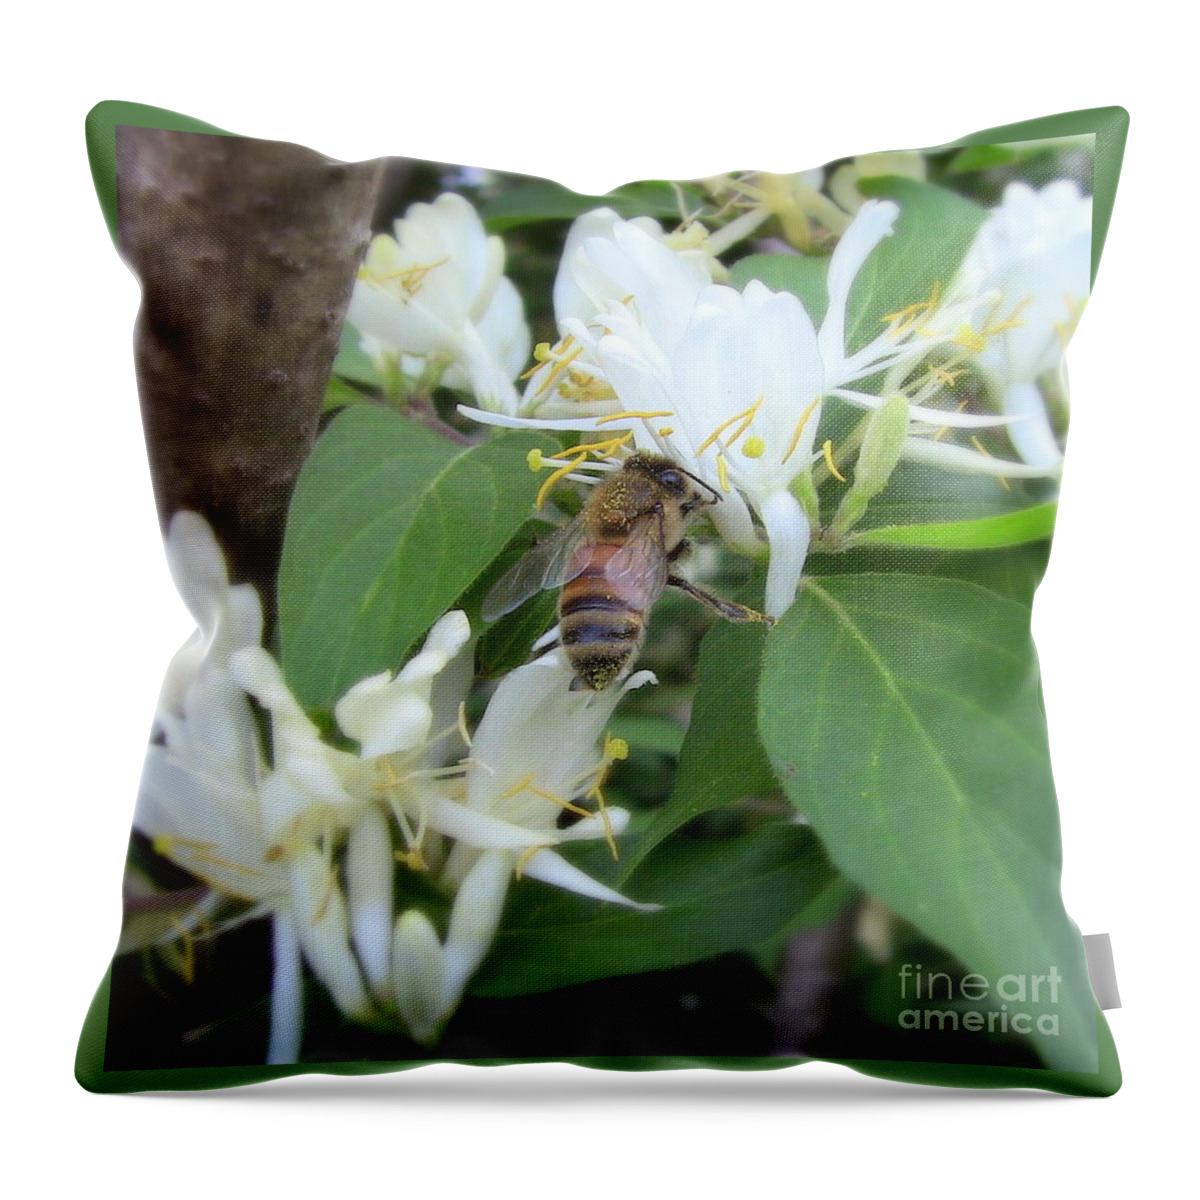 Honeybee Throw Pillow featuring the photograph Honeybee Collecting Pollen by Renee Trenholm